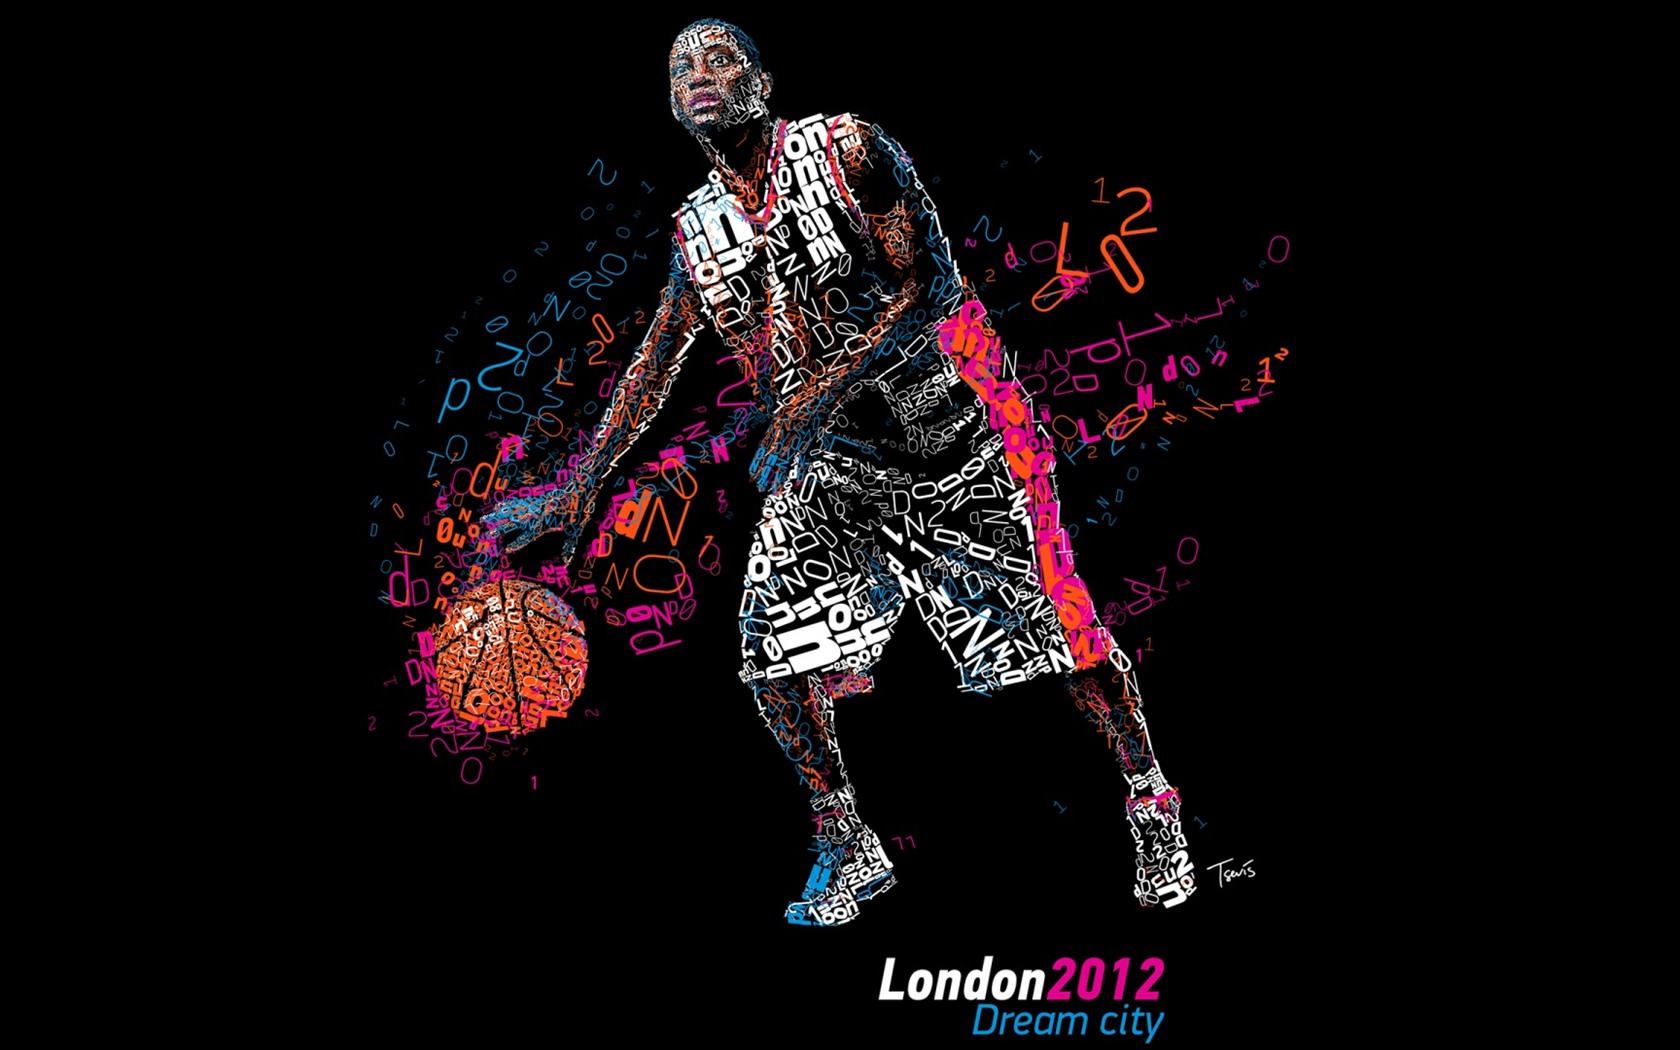 Londres 2012 Olimpiadas fondos temáticos (1) #11 - 1680x1050